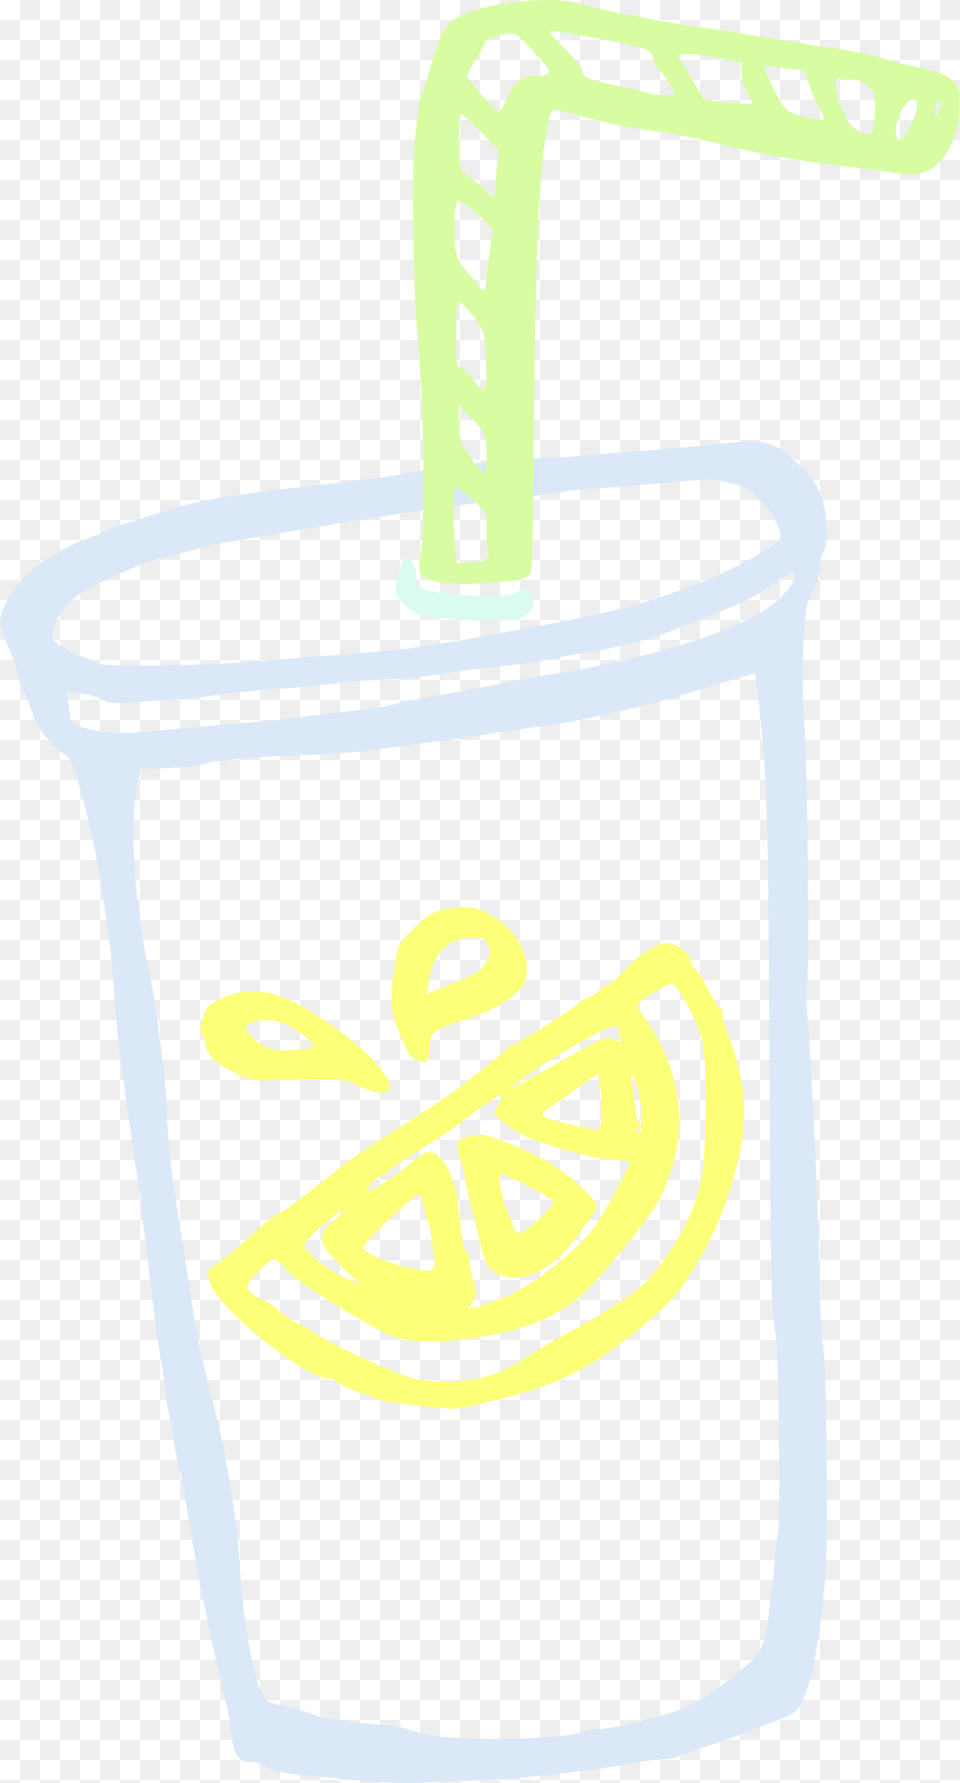 Lemonade Clipart Lemonade Cup Clip Art, Smoke Pipe Png Image